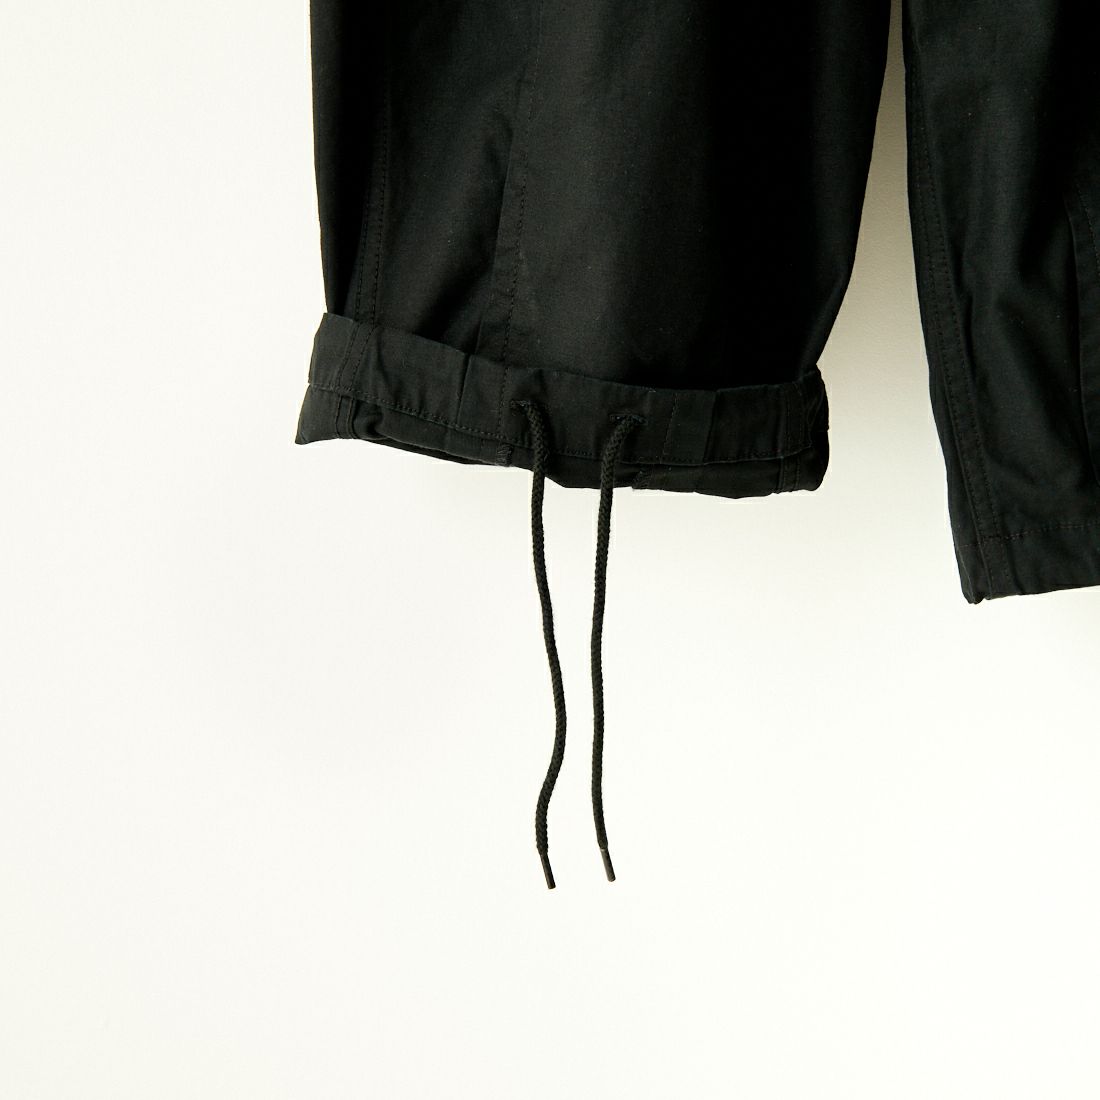 Jeans Factory Clothes [ジーンズファクトリークローズ] ワイドBDUカーゴパンツ [JFC-233-080] BLACK